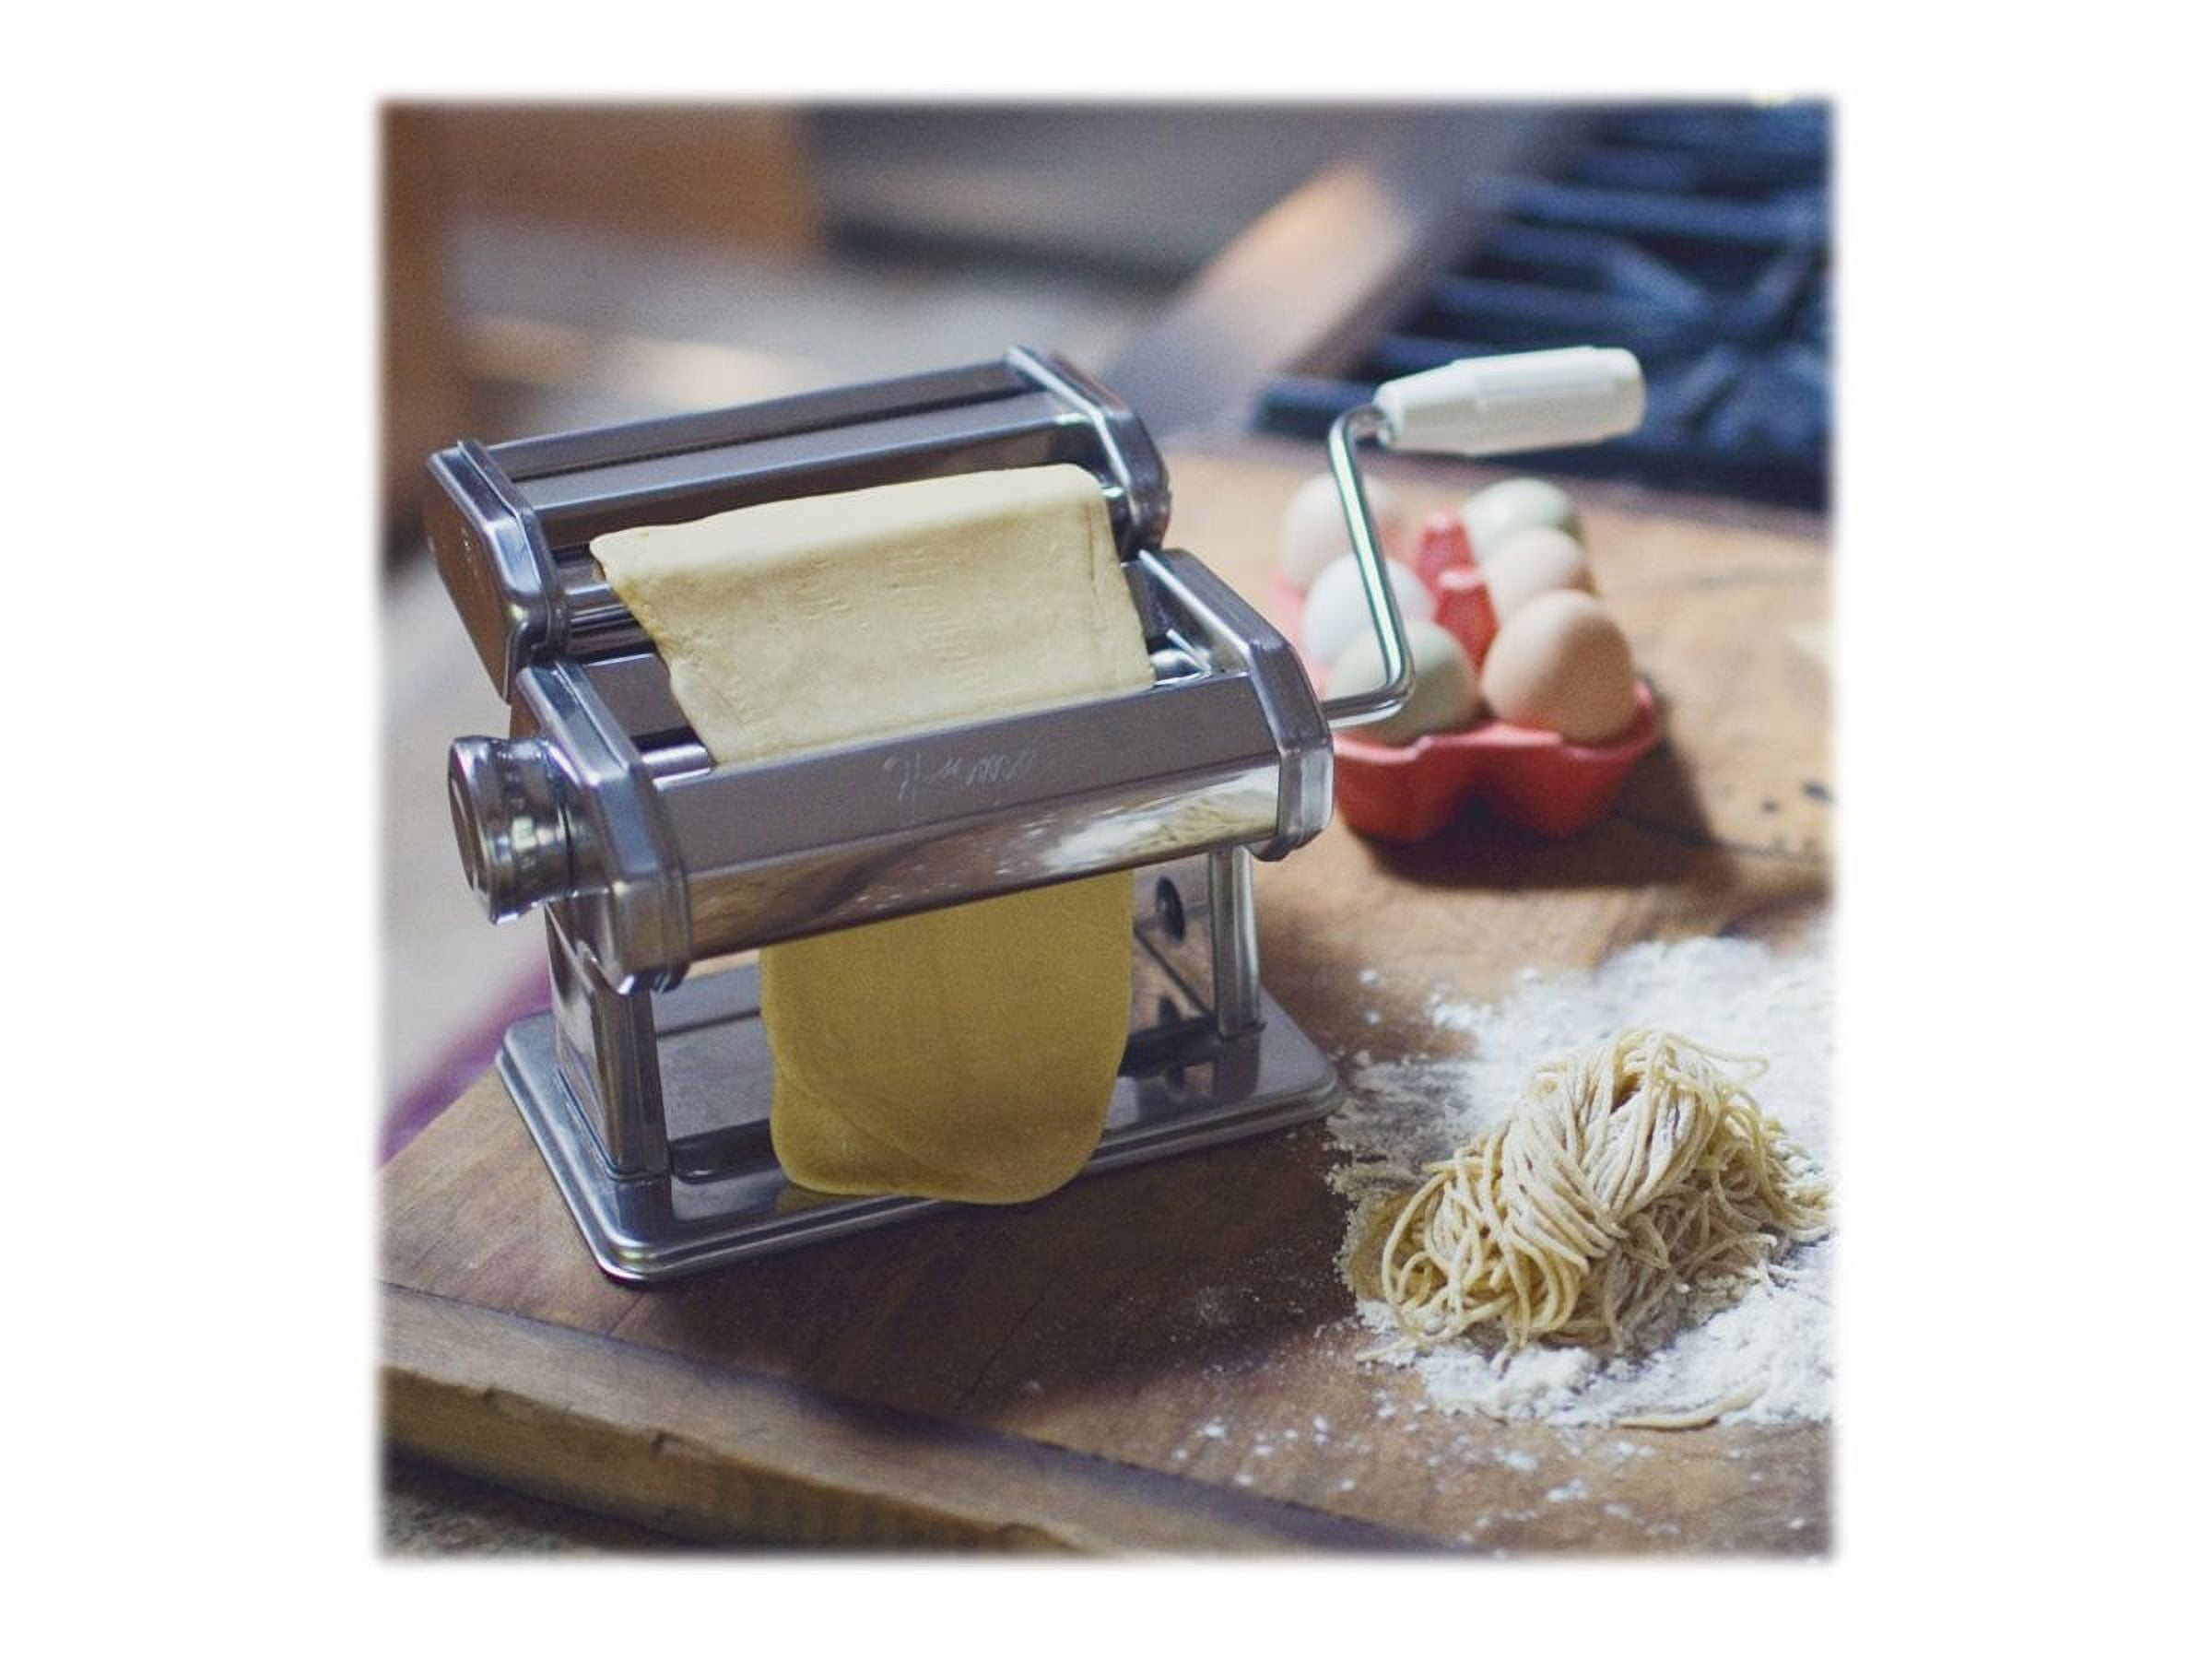 Philips Pasta And Noodle Maker - Black Pasta Maker - Bed Bath & Beyond -  25678986